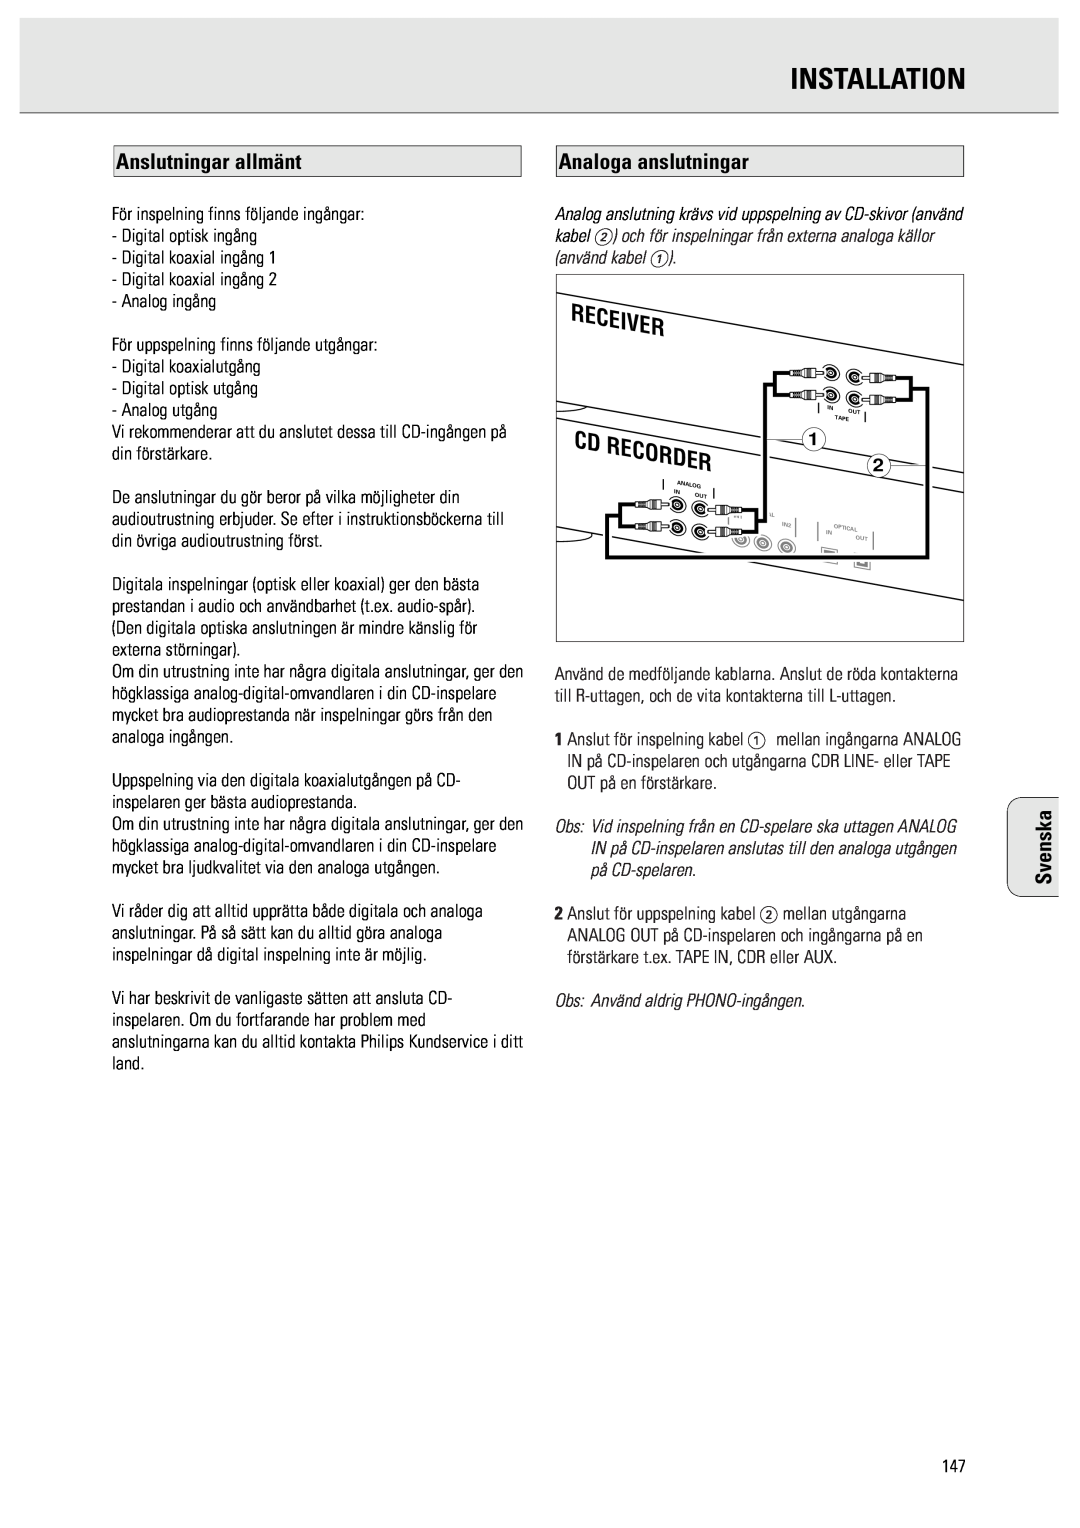 Philips CDR950/951 manual Installation, Anslutningar allmänt, Analoga anslutningar, Receiver, Recorder, Svenska 